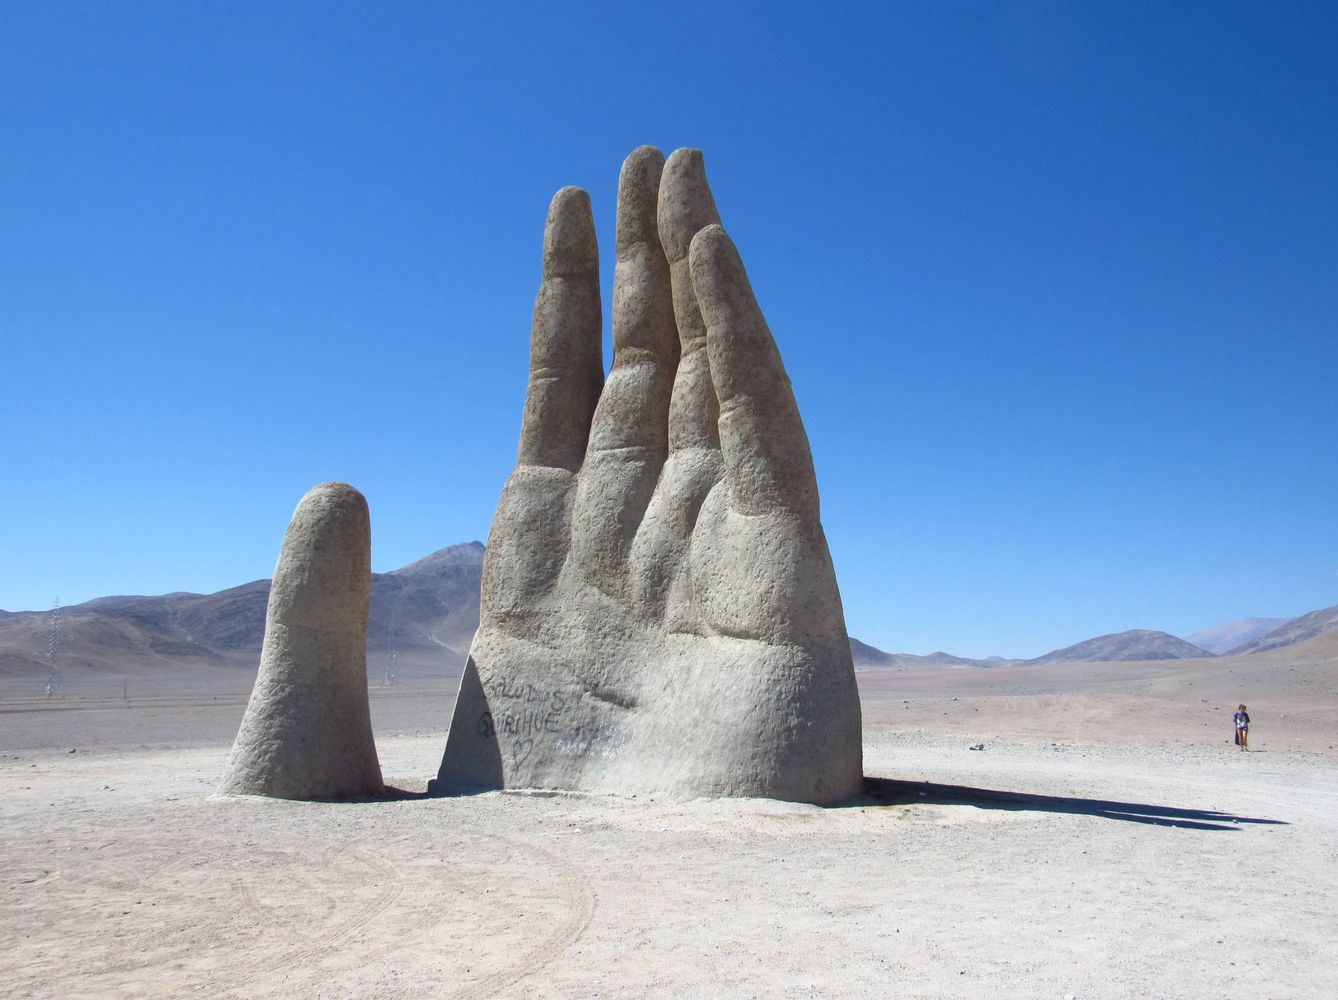 Escultura 'Mano del desierto' de Mario Irarrázabal en el desierto de Atacama. (Flickr: daniel ruiz)